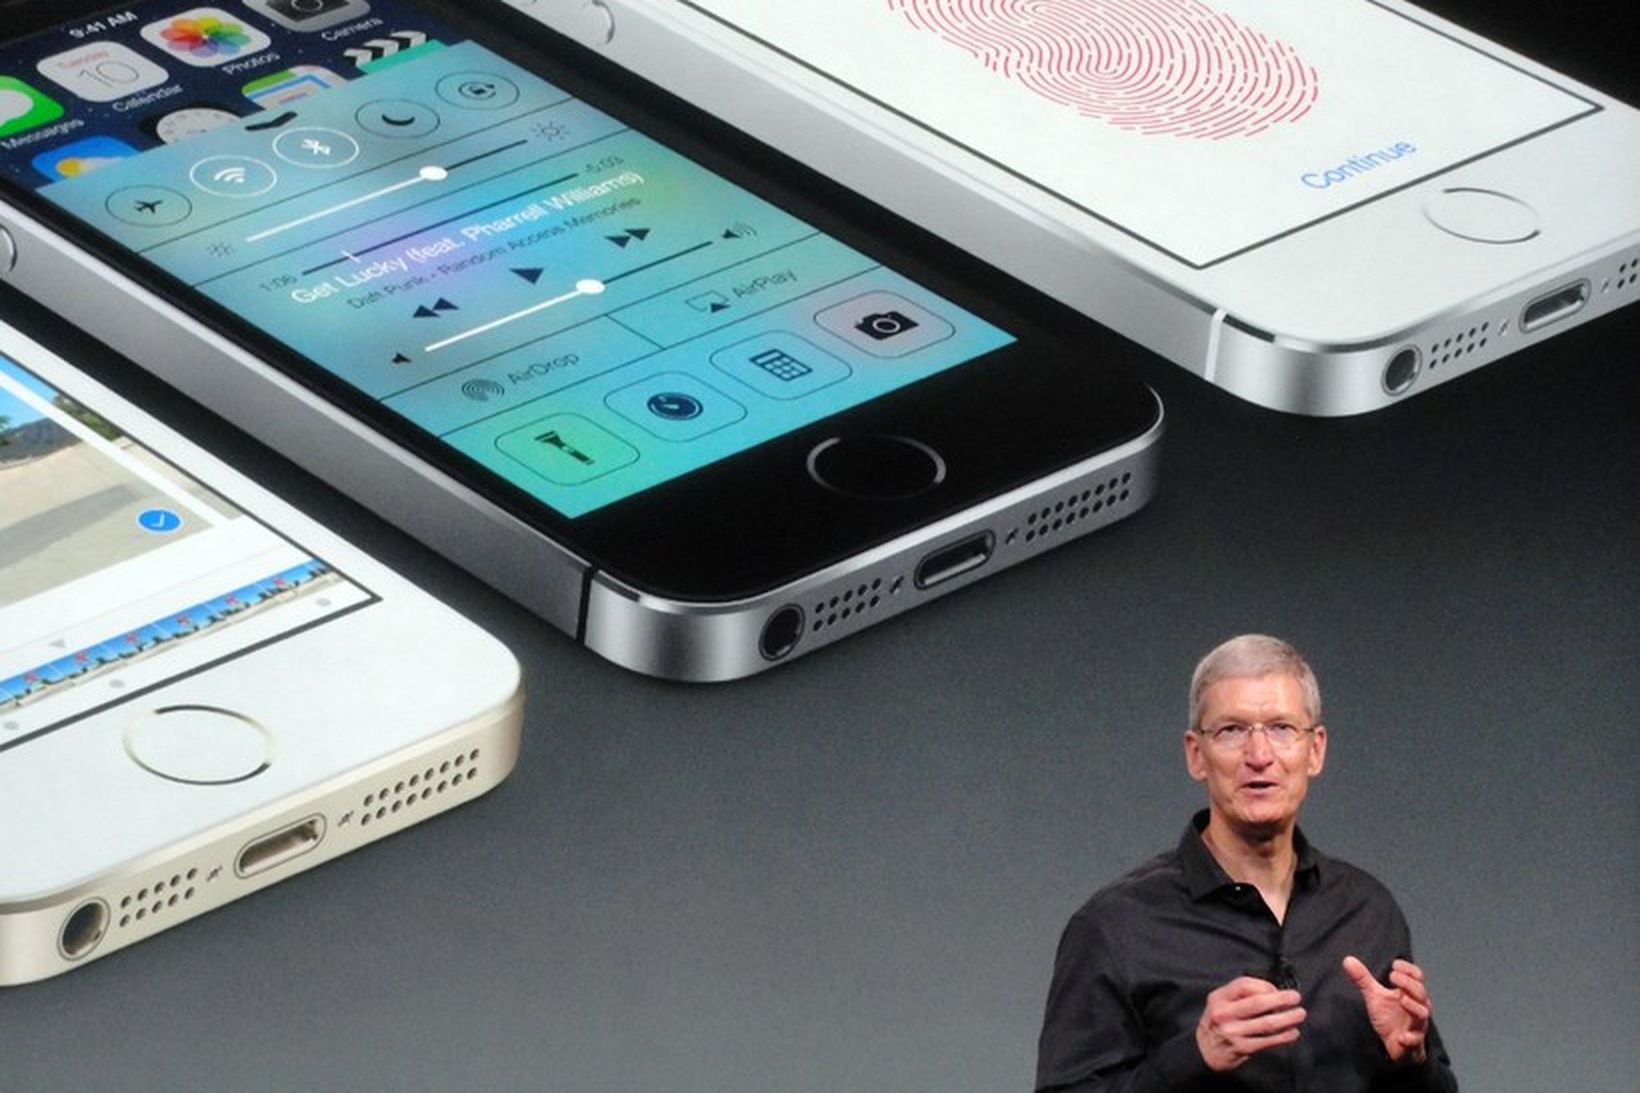 Tim Cook, forstjóri Apple, við kynningu á iPhone 6 símanum.